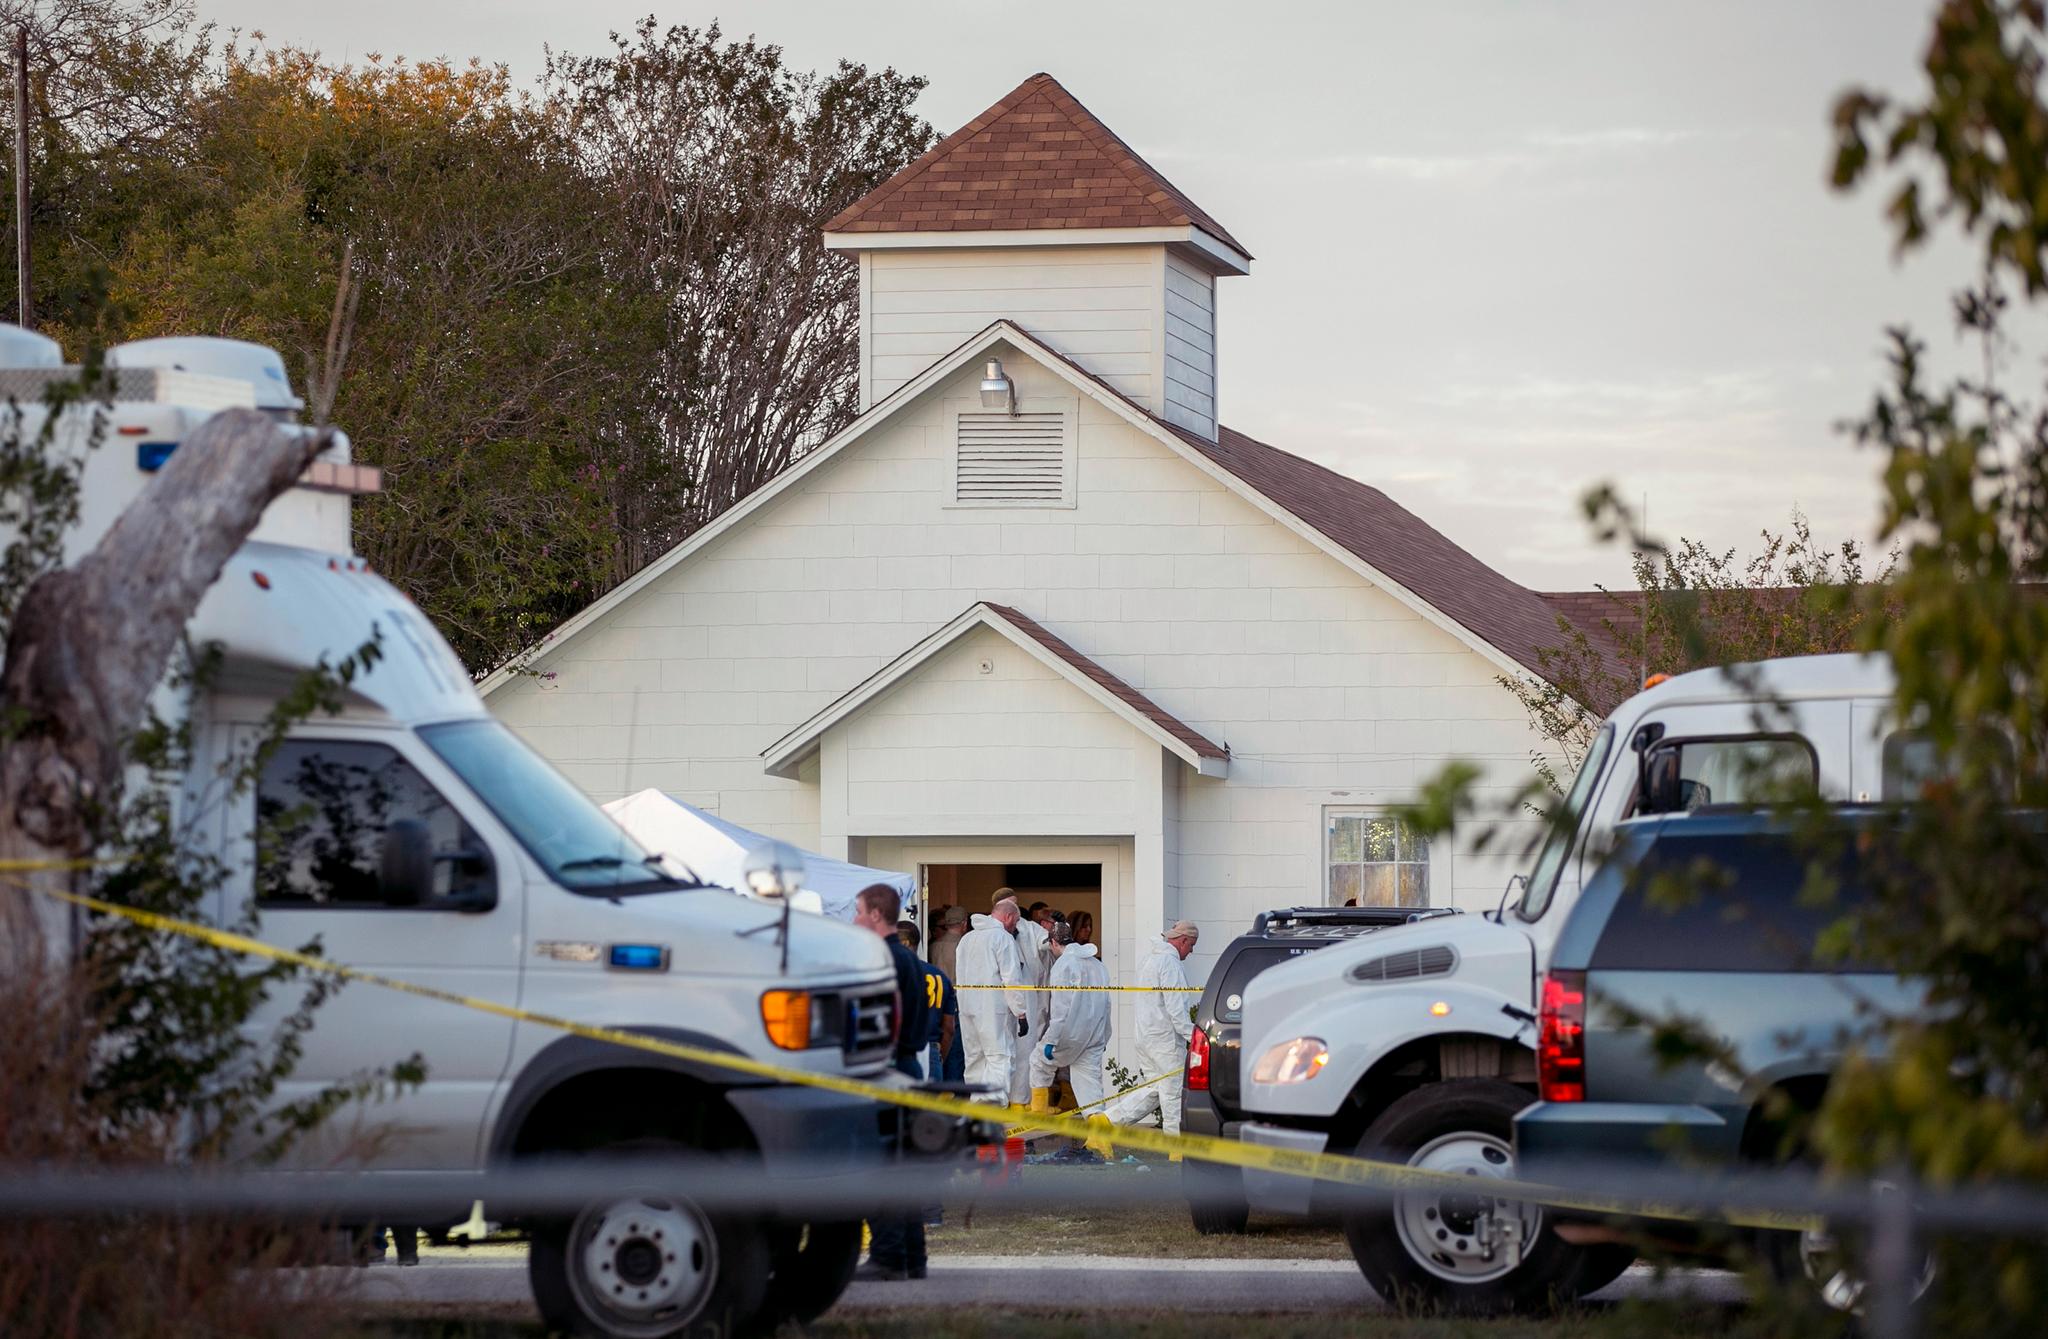 26 mennesker ble drept i baptistkirken i Sutherland Springs. Gjerningsmannen ble skutt to ganger av en sivilist og skjøt til slutt seg selv, opplyser myndighetene. . Foto: Jay Janner / Austin American-Statesman via AP / NTB scanpix